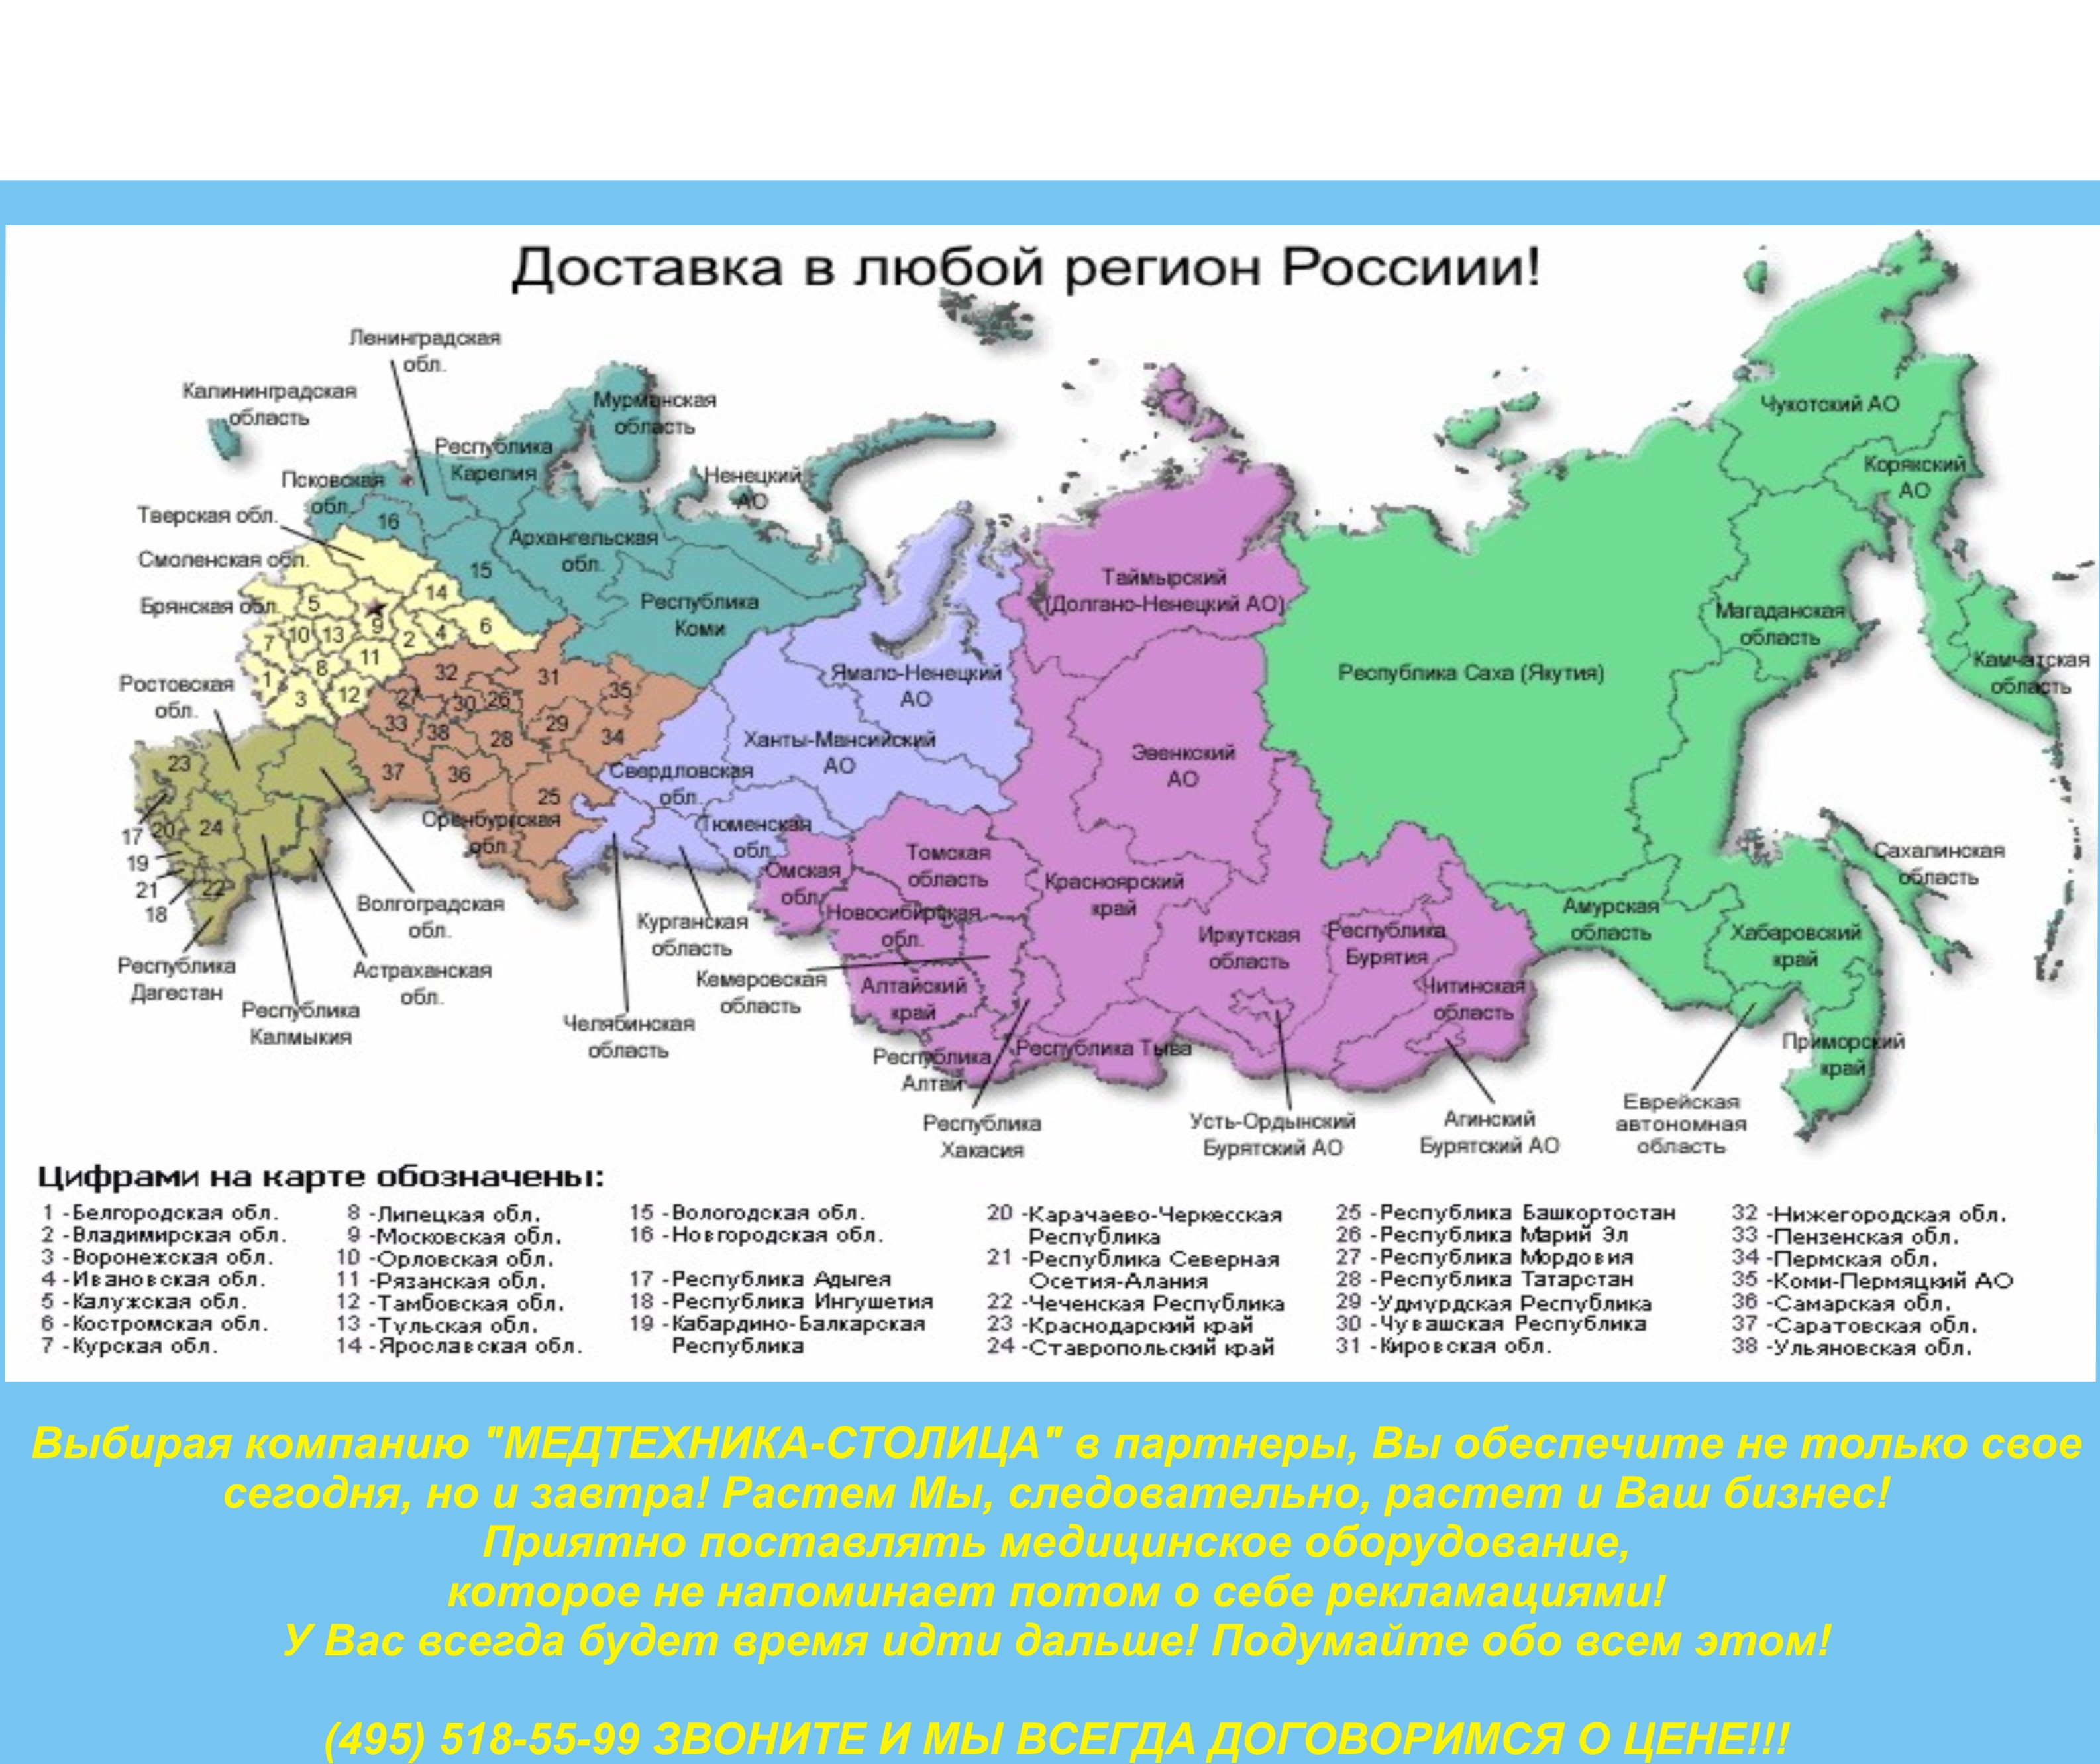 Карту края москвы